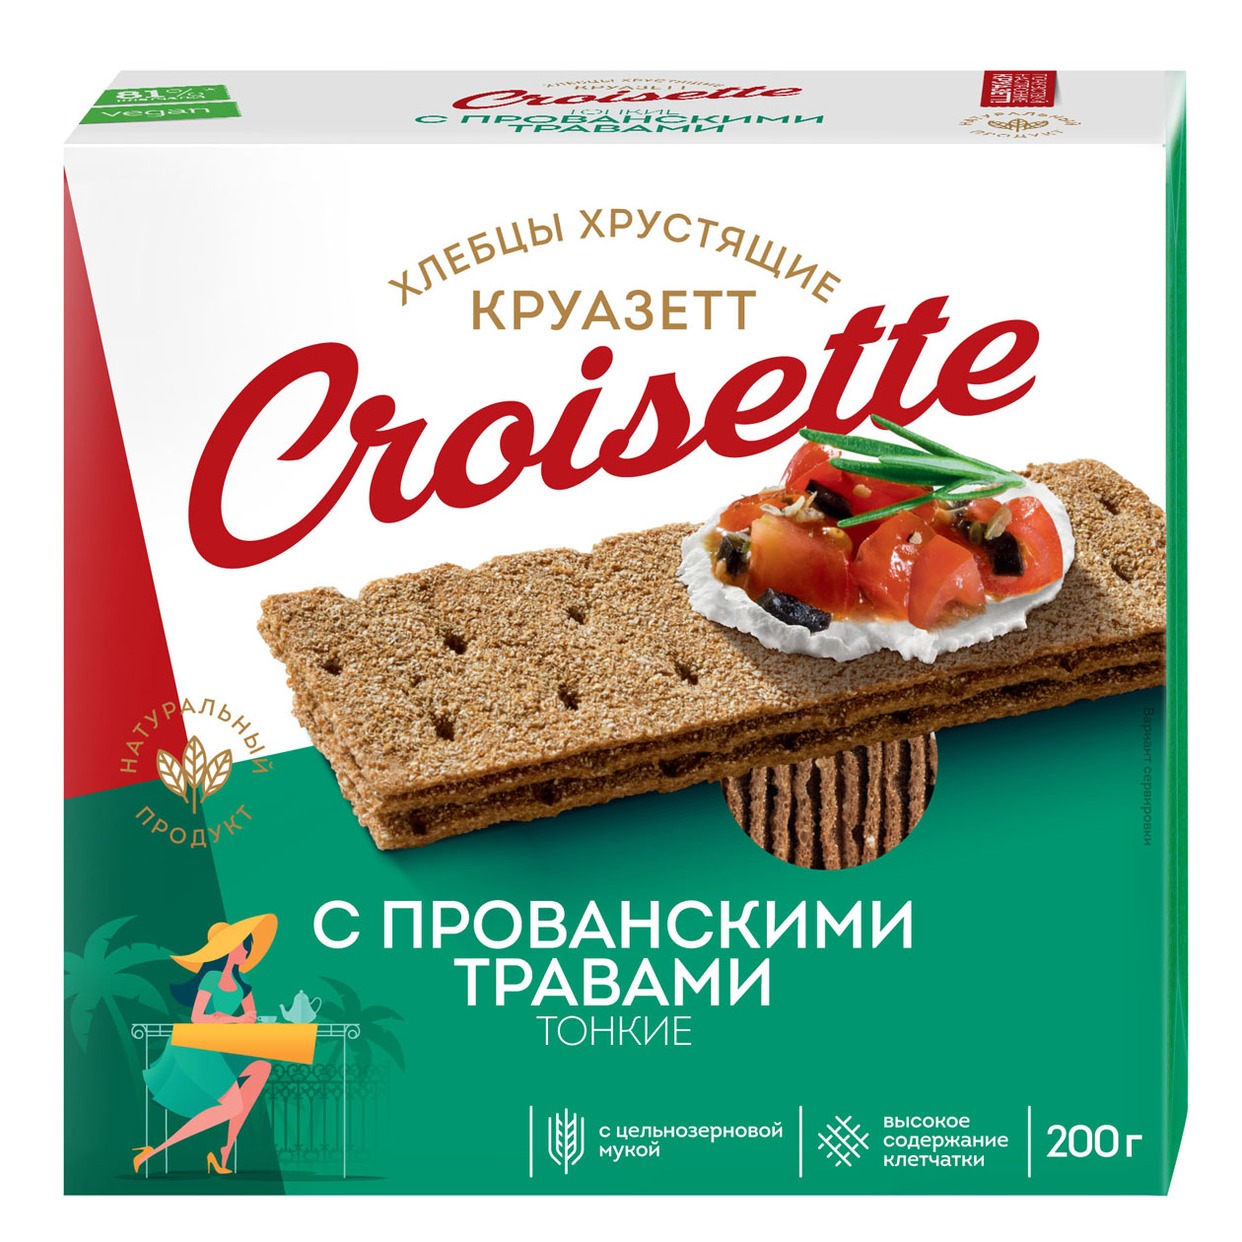 Хлебцы Croisette, ржано-пшеничные, 200 г